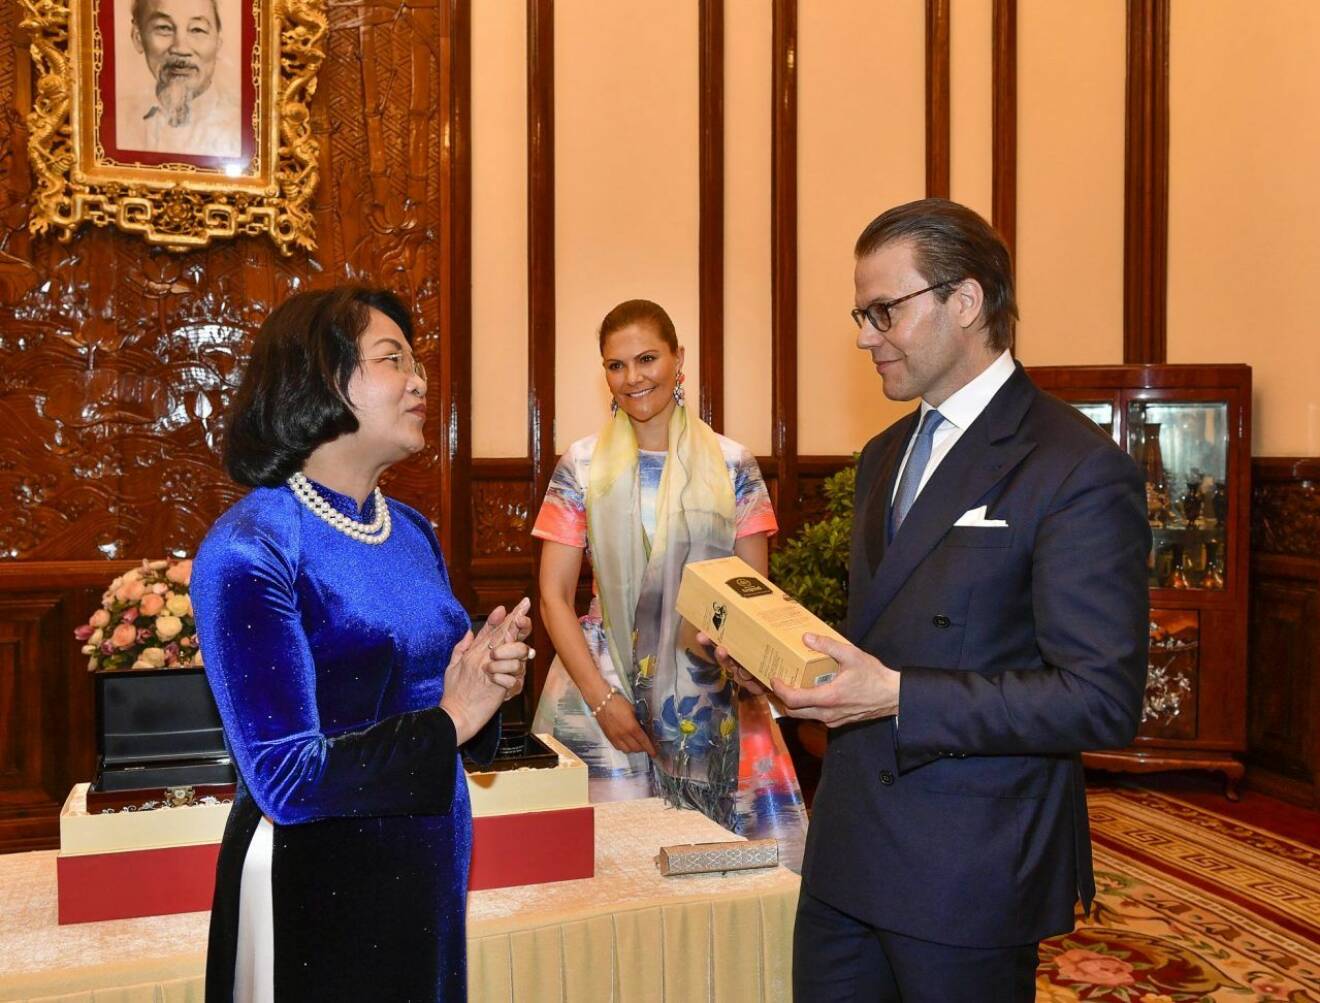 Prins Daniel utbyter gåvor med Vietnams vicepresident. I bakgrunden Victoria som precis fått en sjal.